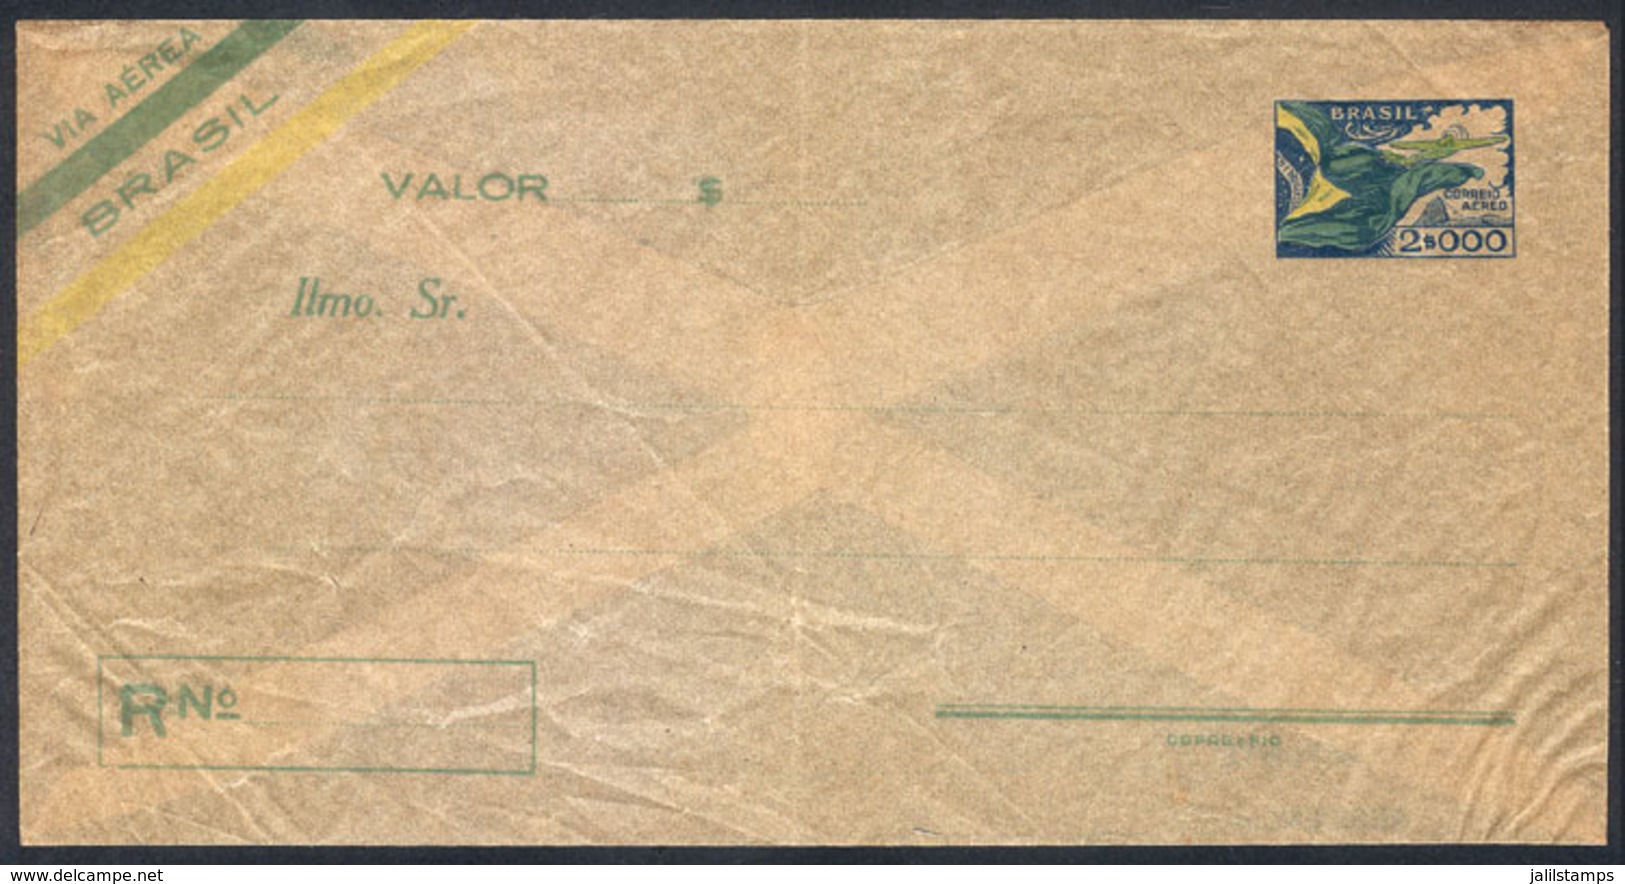 BRAZIL: RHM.EV-13, Unused Envelope For Declared Value, Fine Quality, Catalog Value 900Rs., Low Start! - Postal Stationery